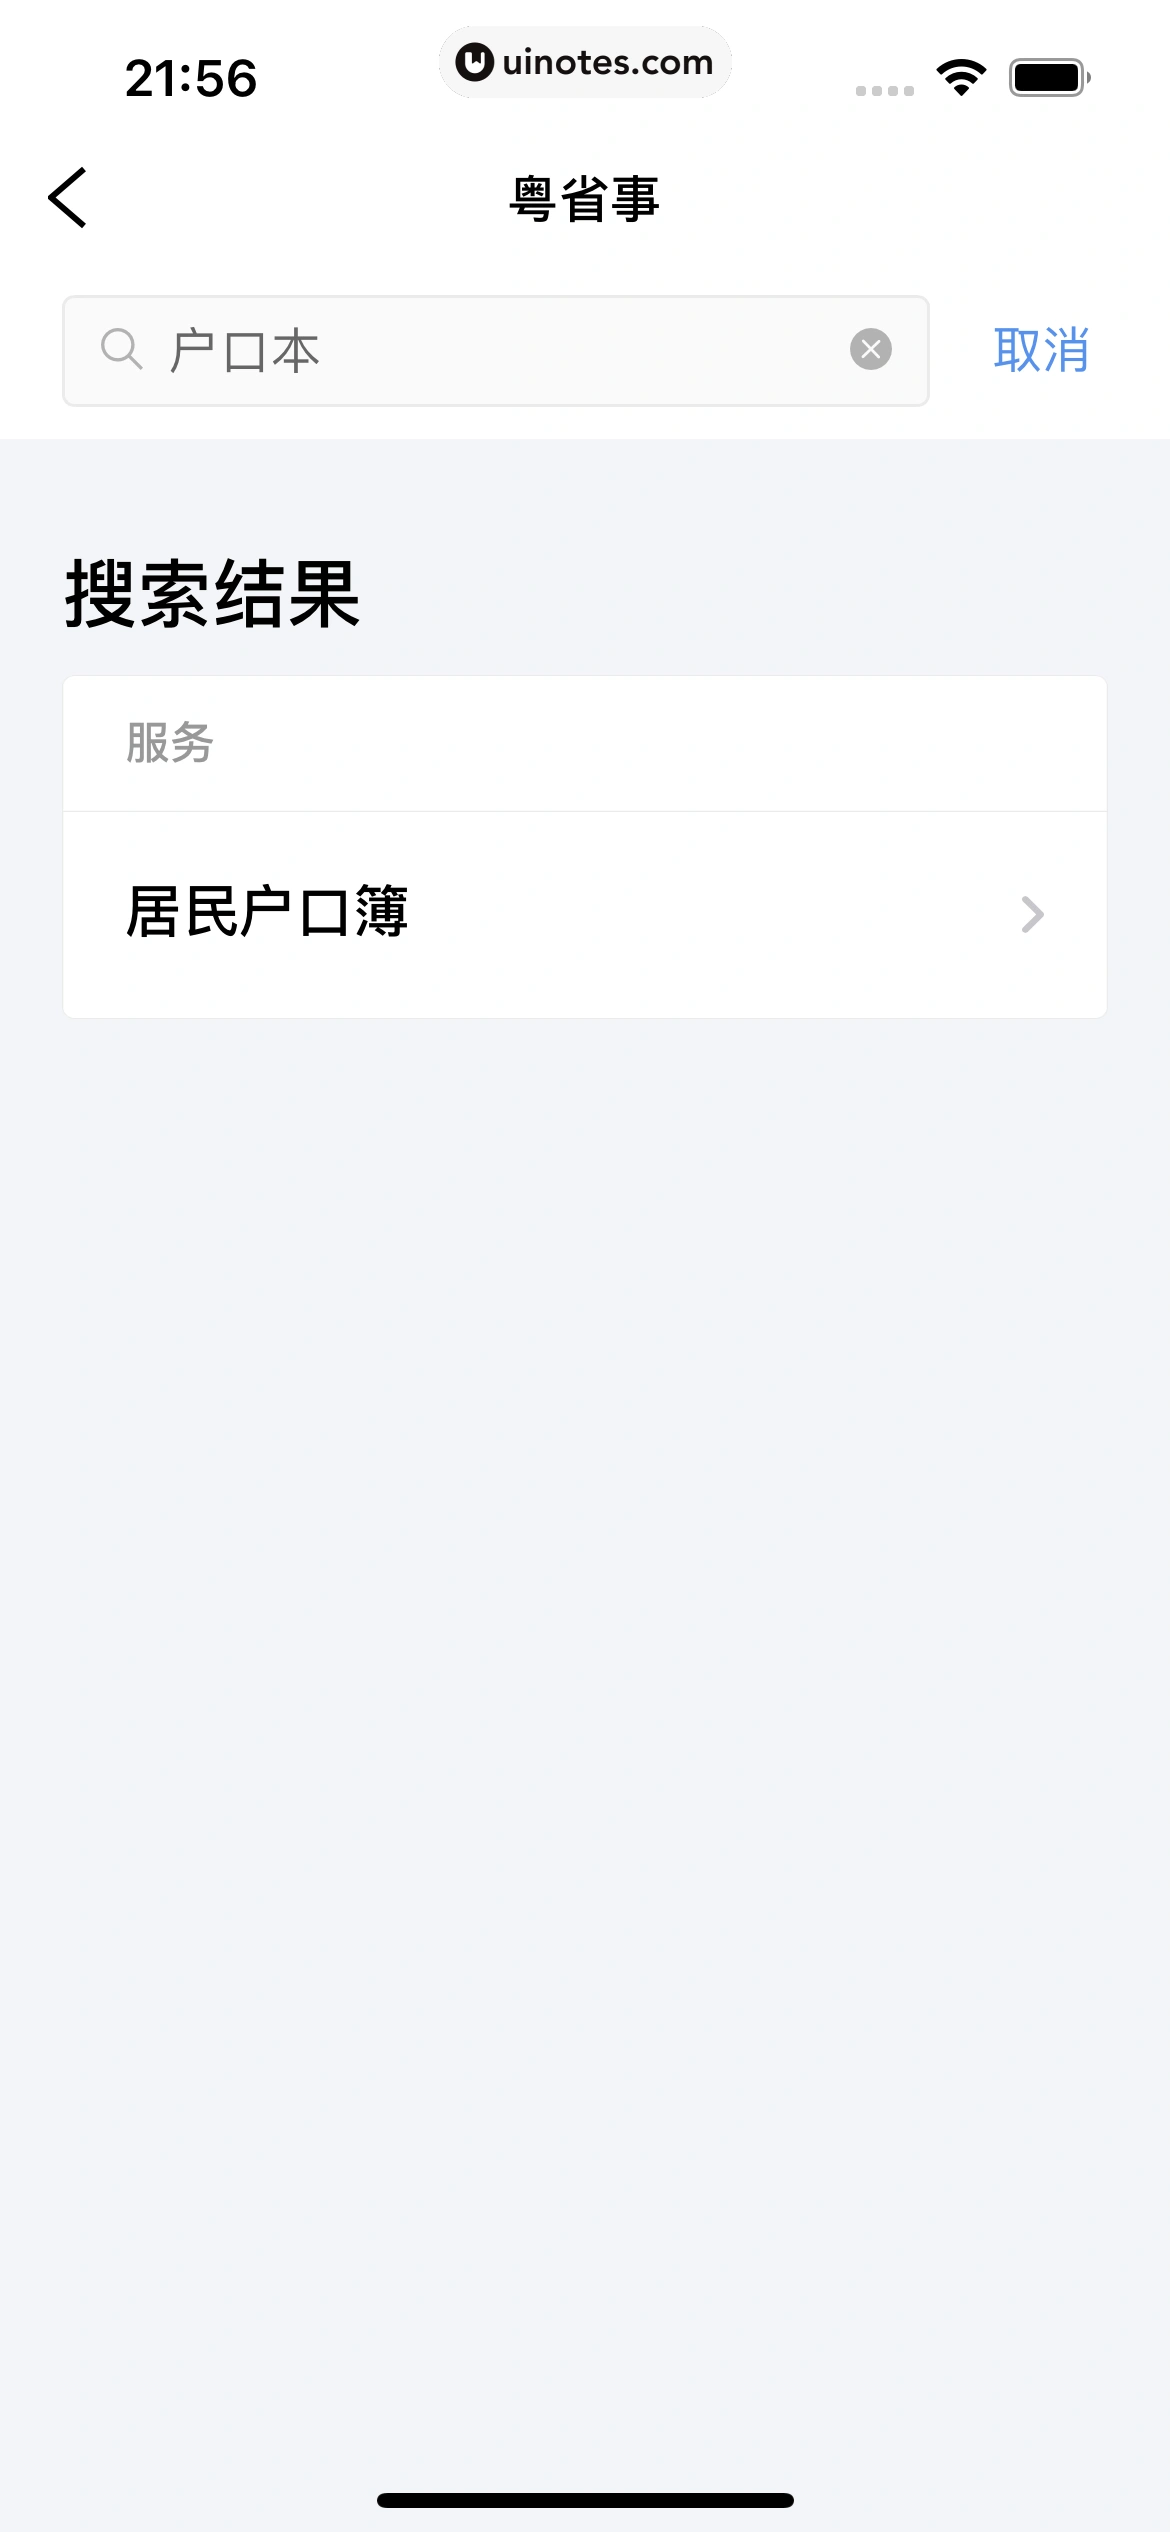 粤省事 App 截图 109 - UI Notes